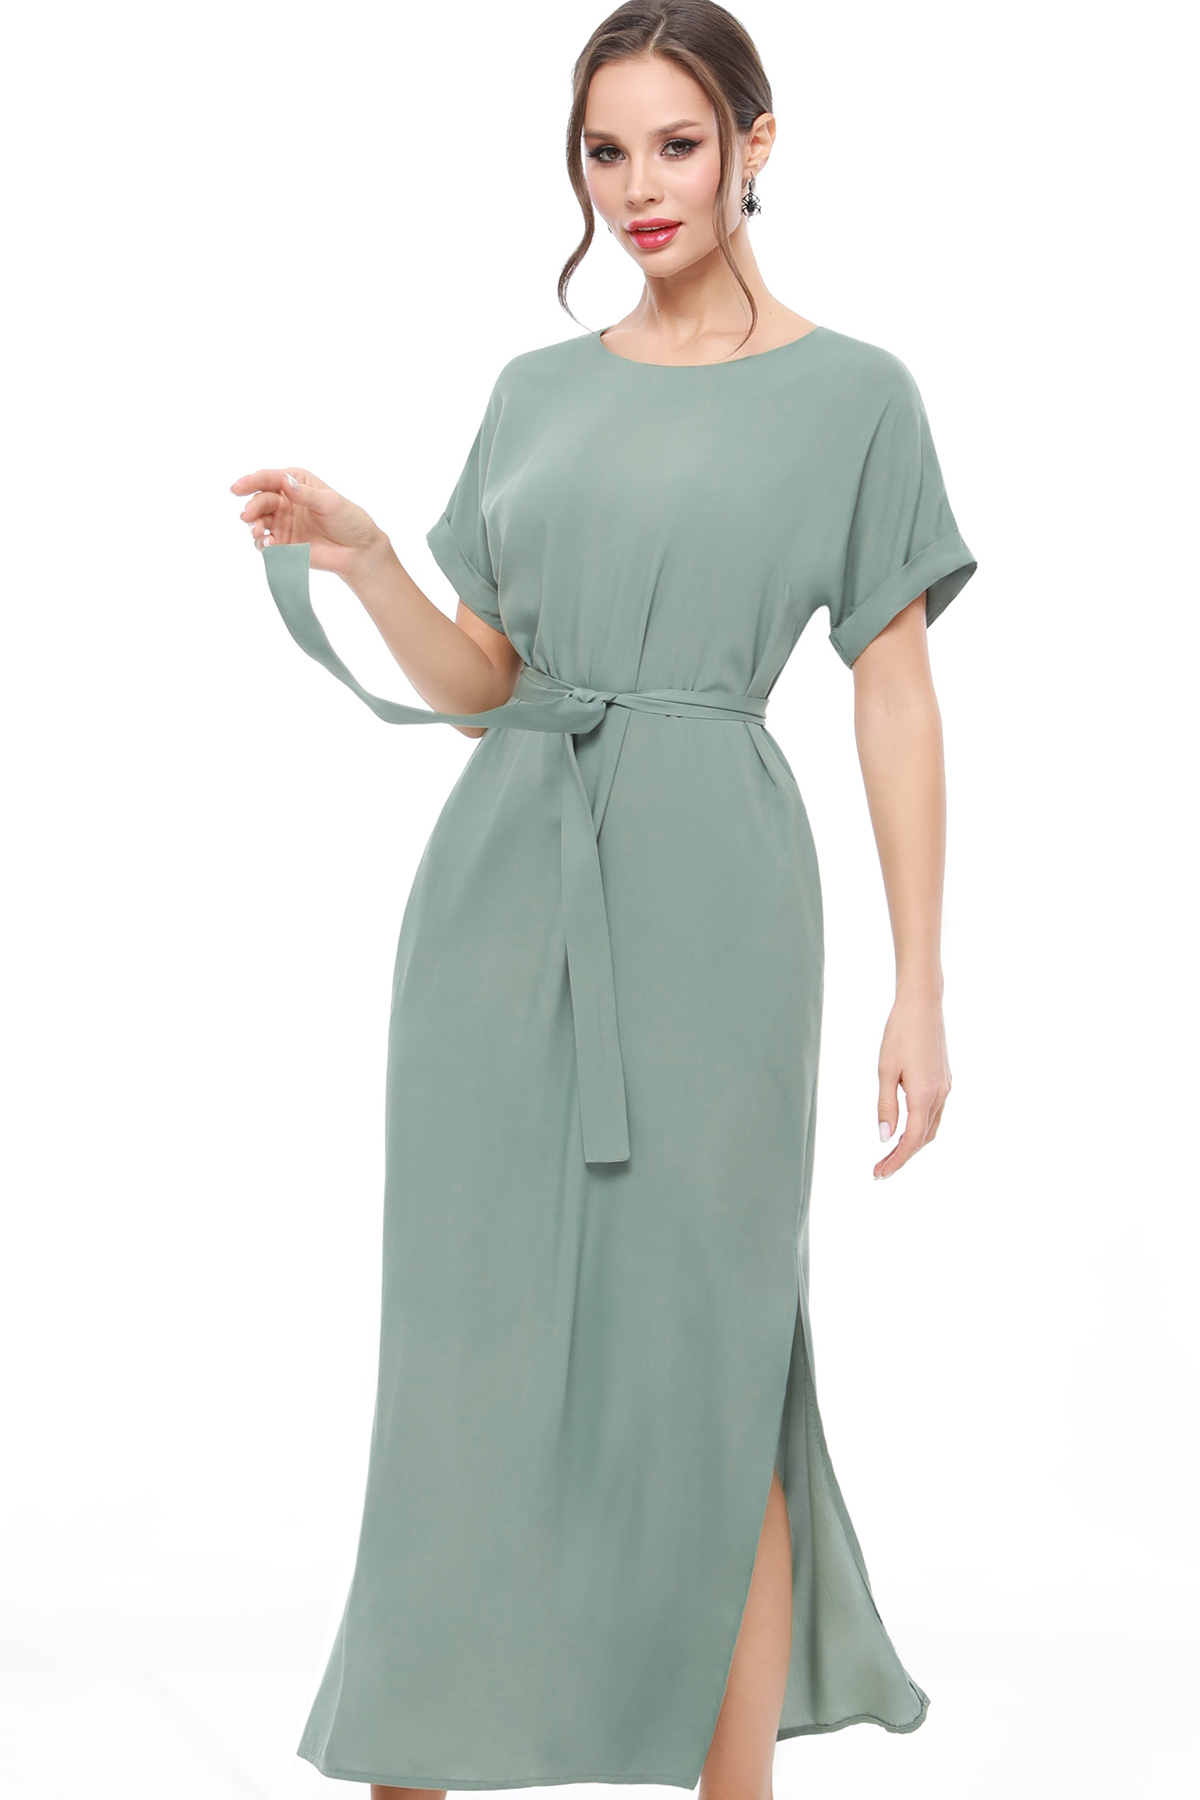 Платье женское DSTrend 0230 зеленое 44 RU